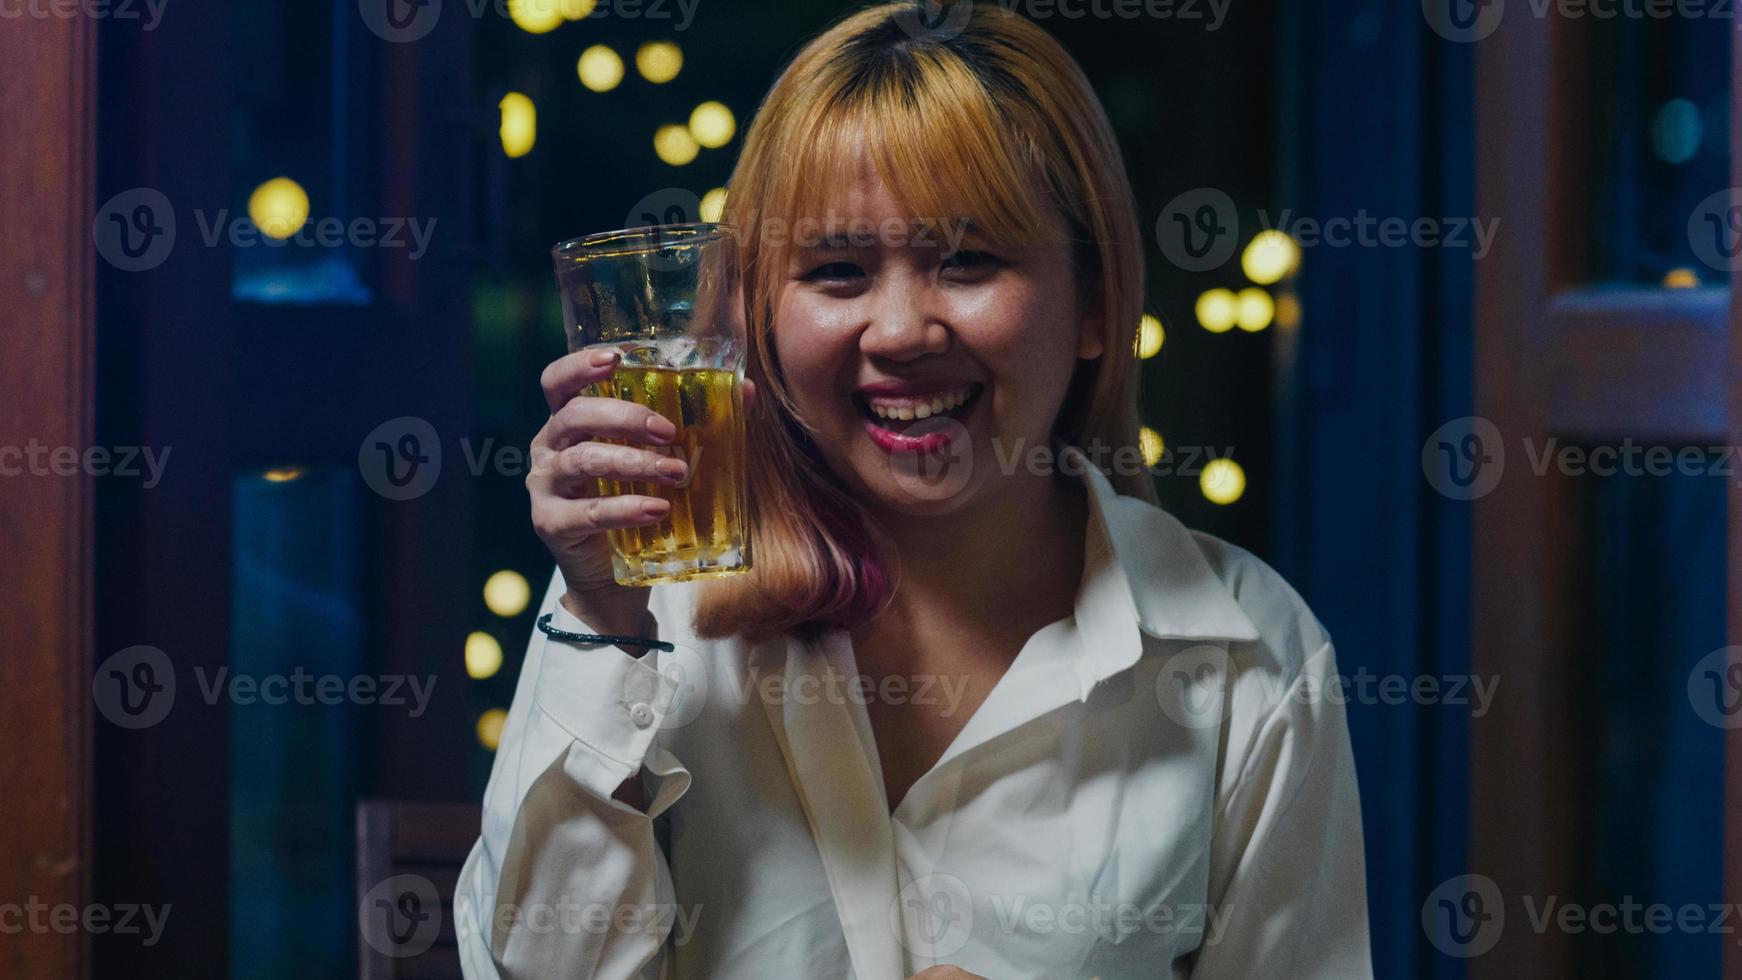 jovem asiática bebendo cerveja se divertindo feliz noite festa ano novo evento on-line celebração via videochamada por telefone em casa à noite. distância social, quarentena para coronavírus. ponto de vista ou pov foto